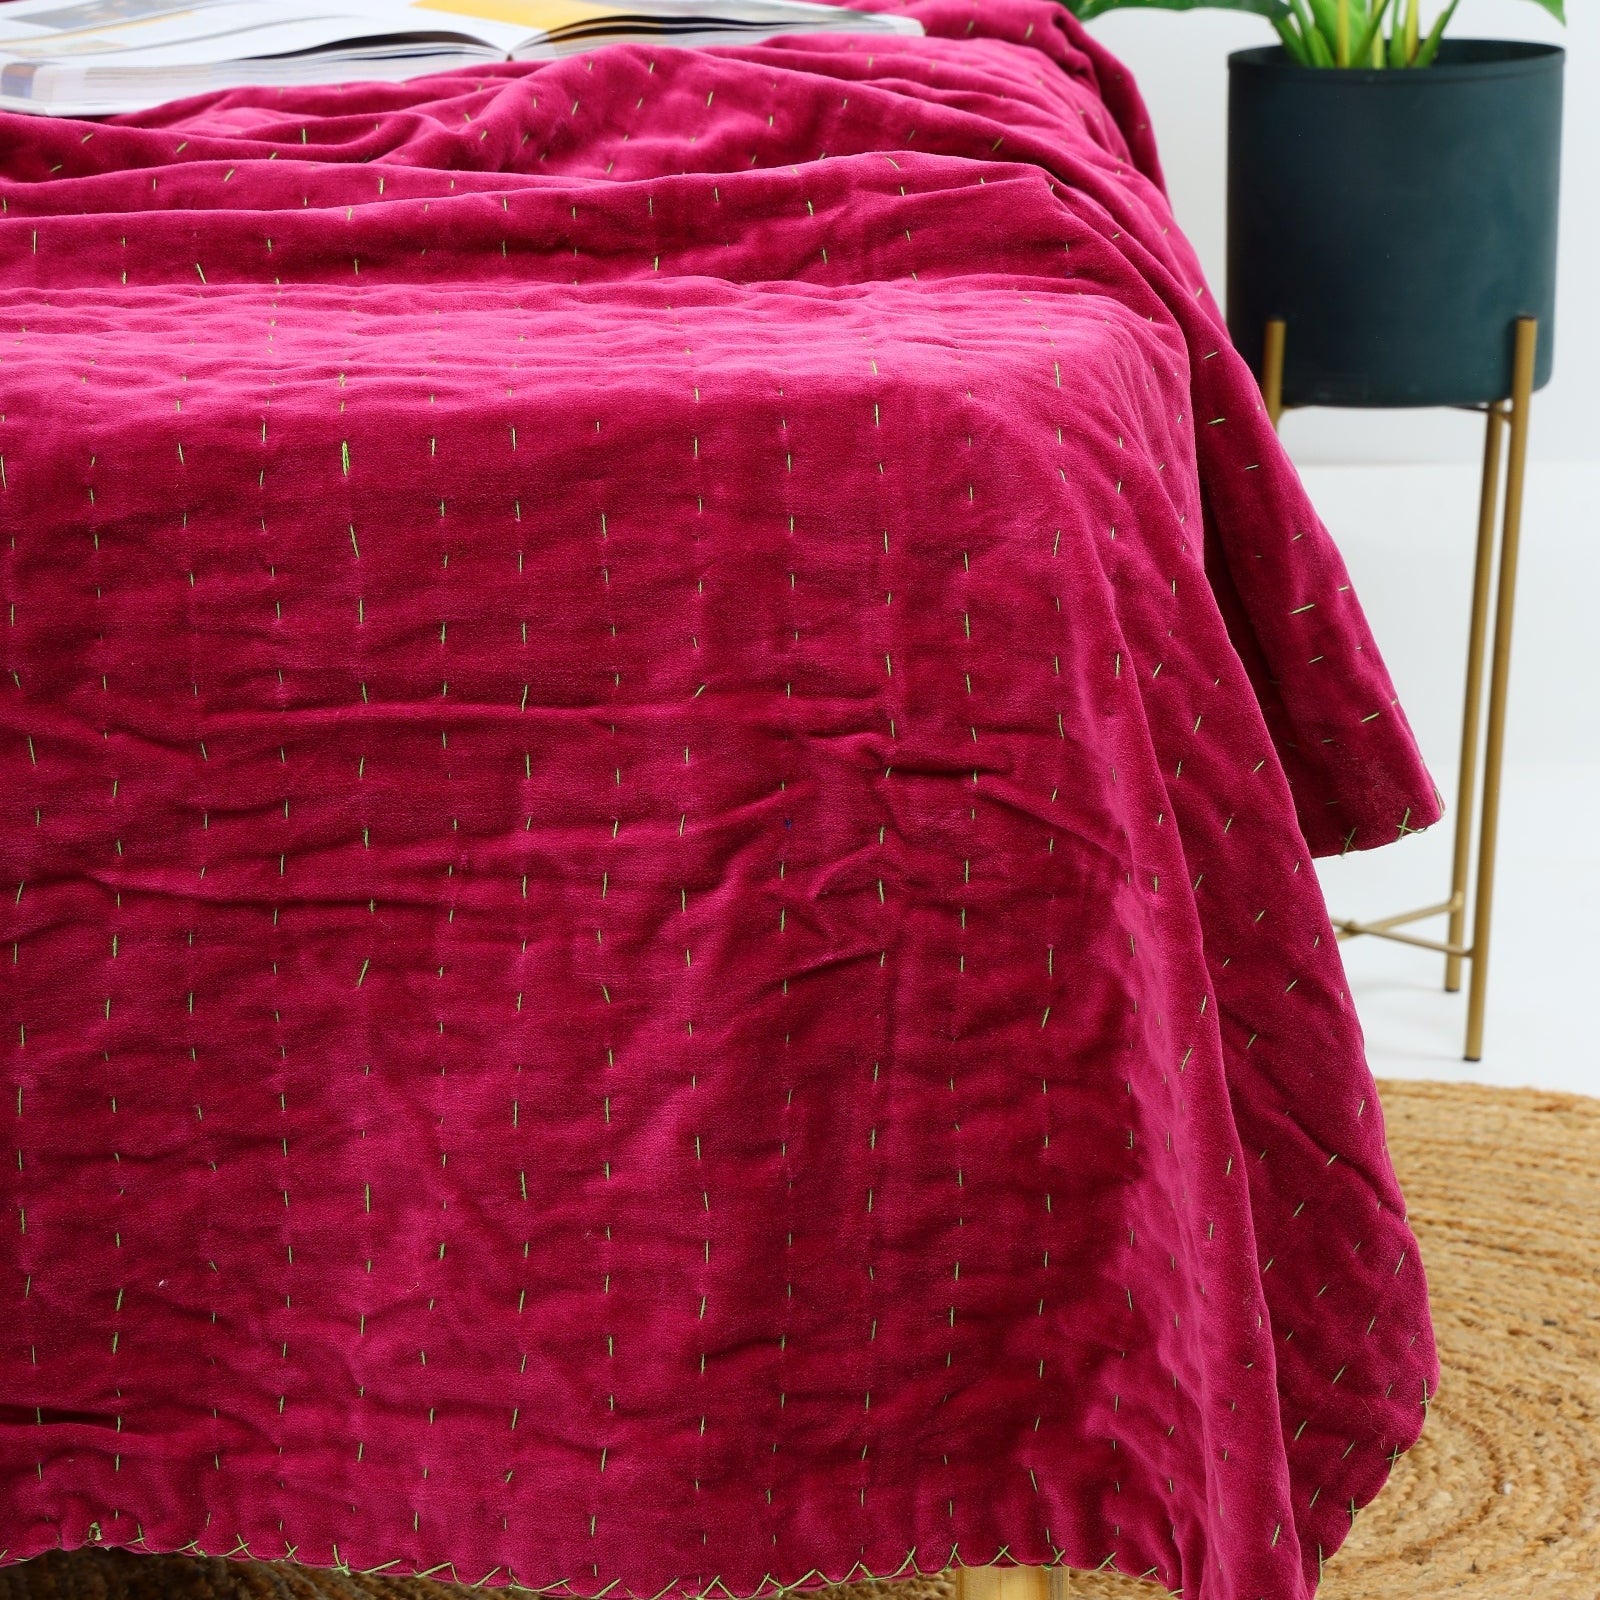 Handmade Velvet Kantha Quilt - Boho Block Print Bedspread